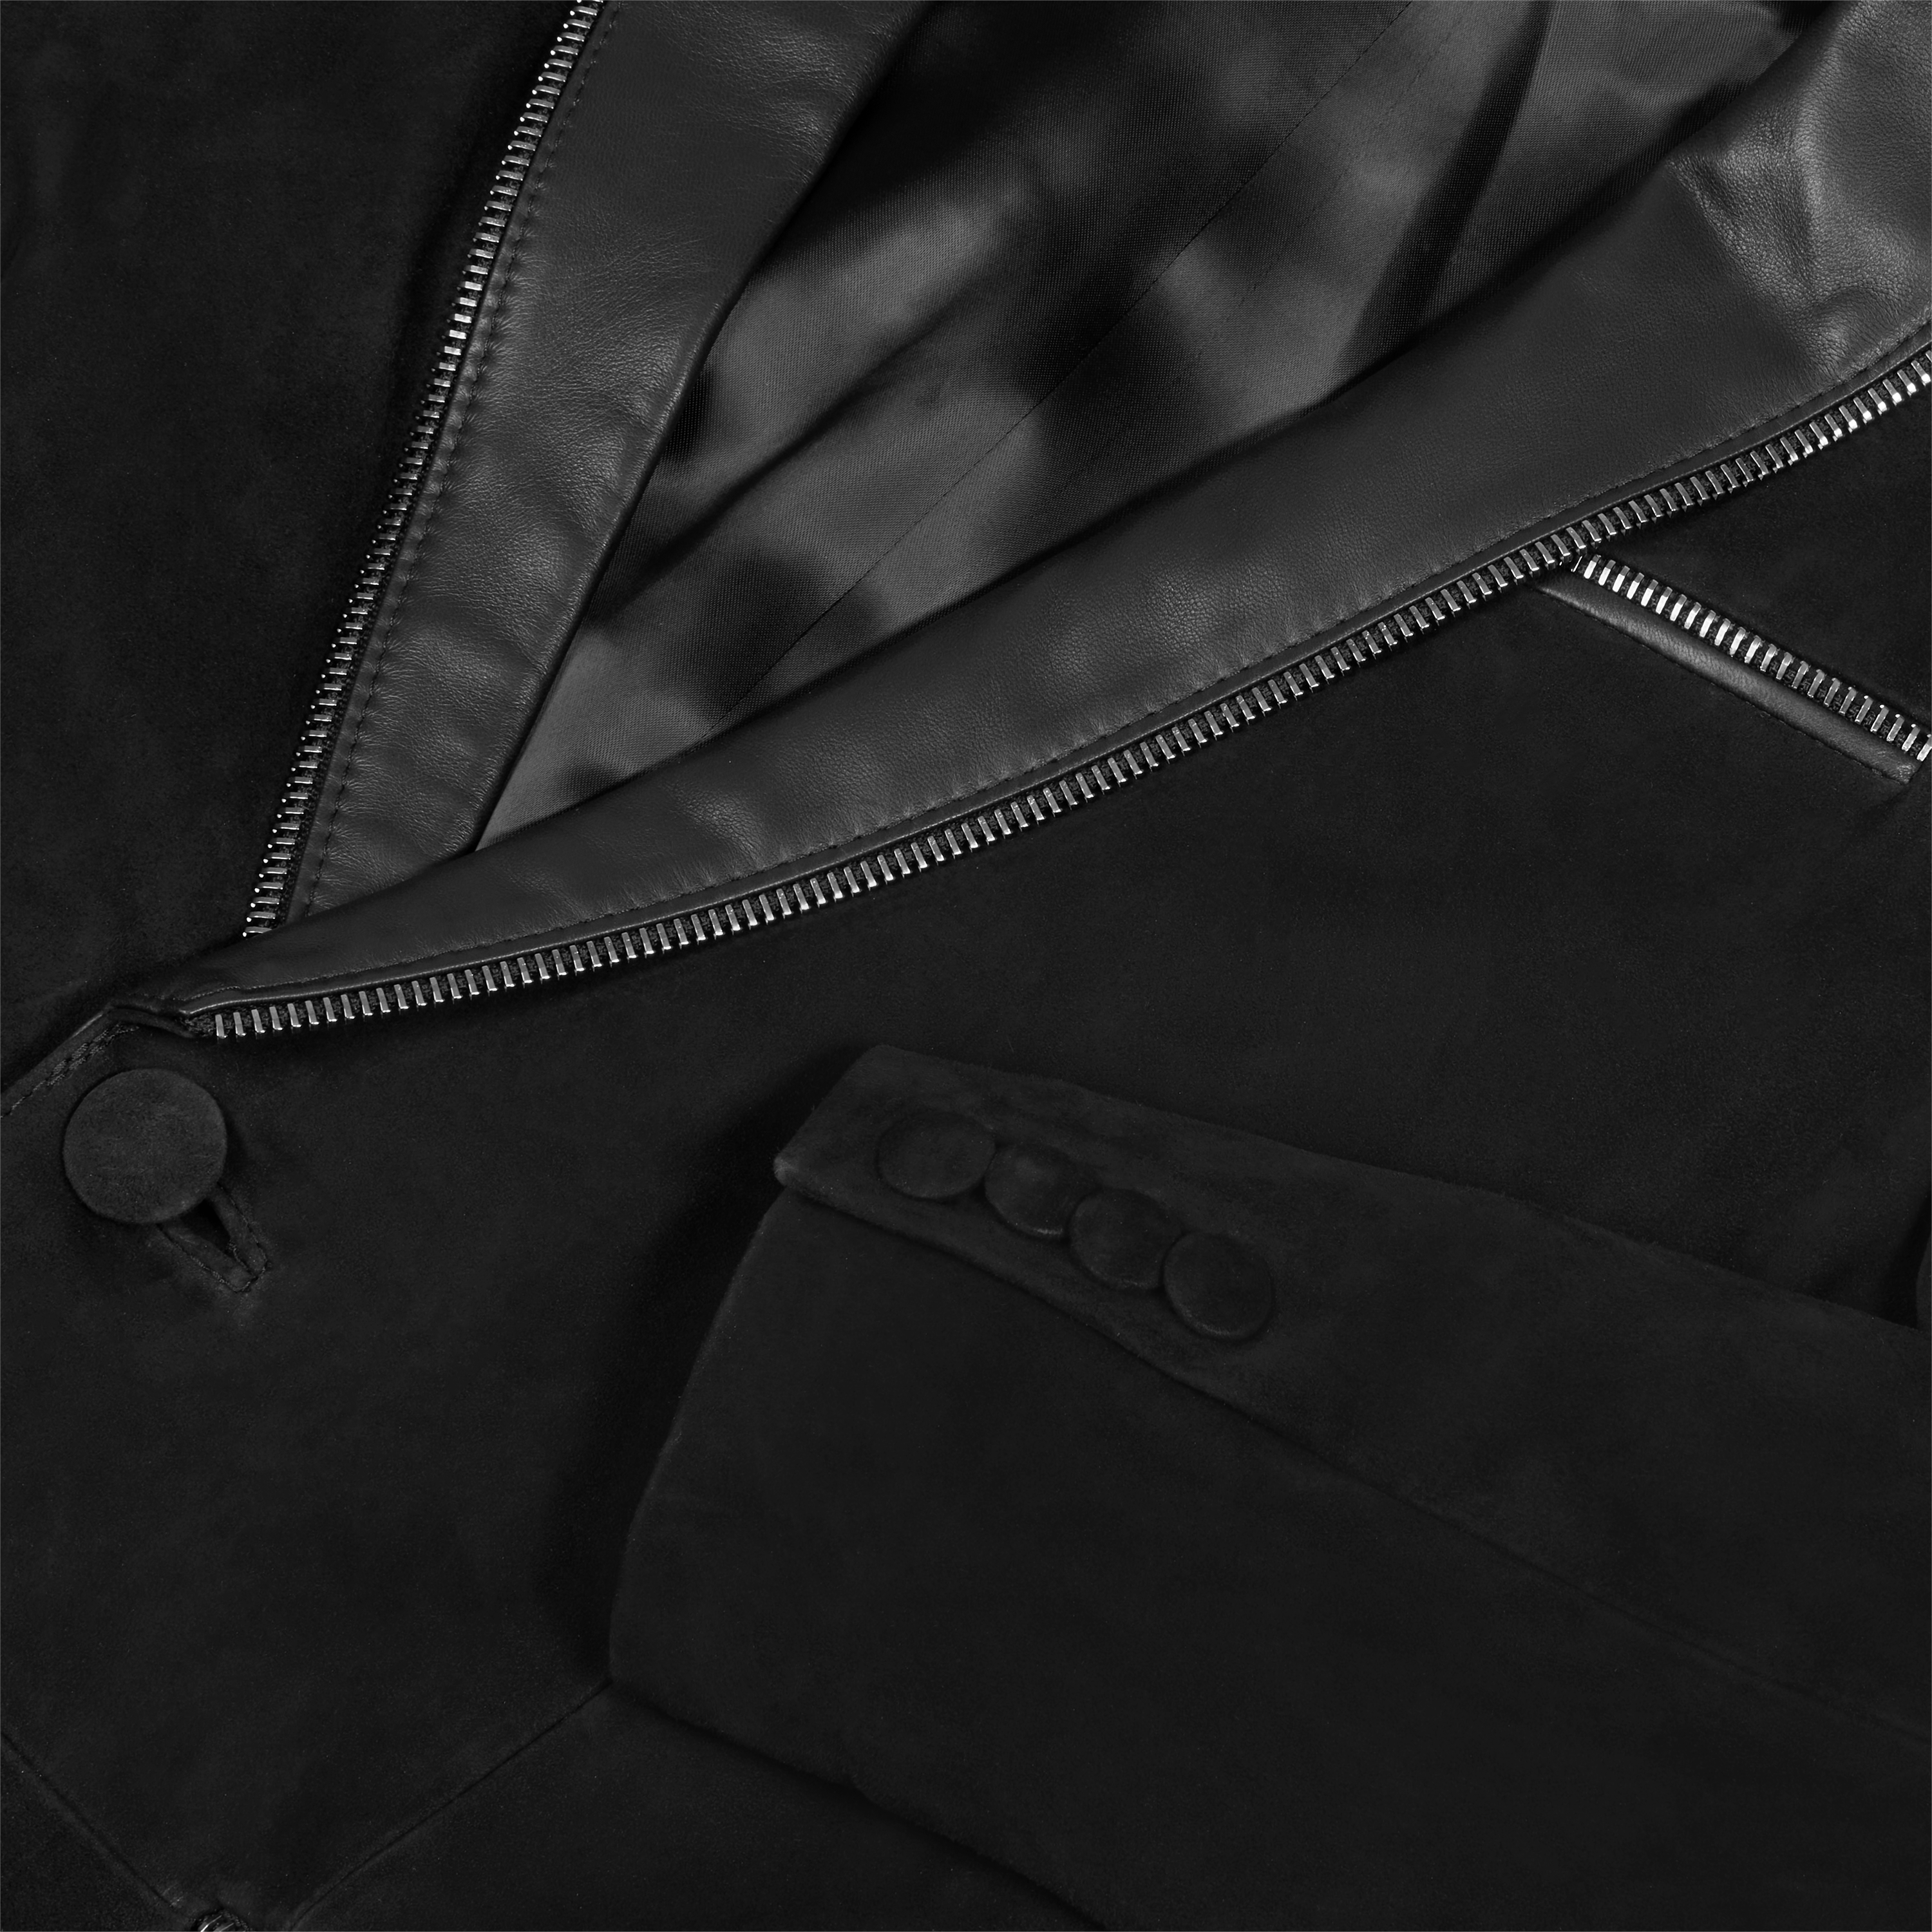 Leather blazer - Monaco by Martin Key